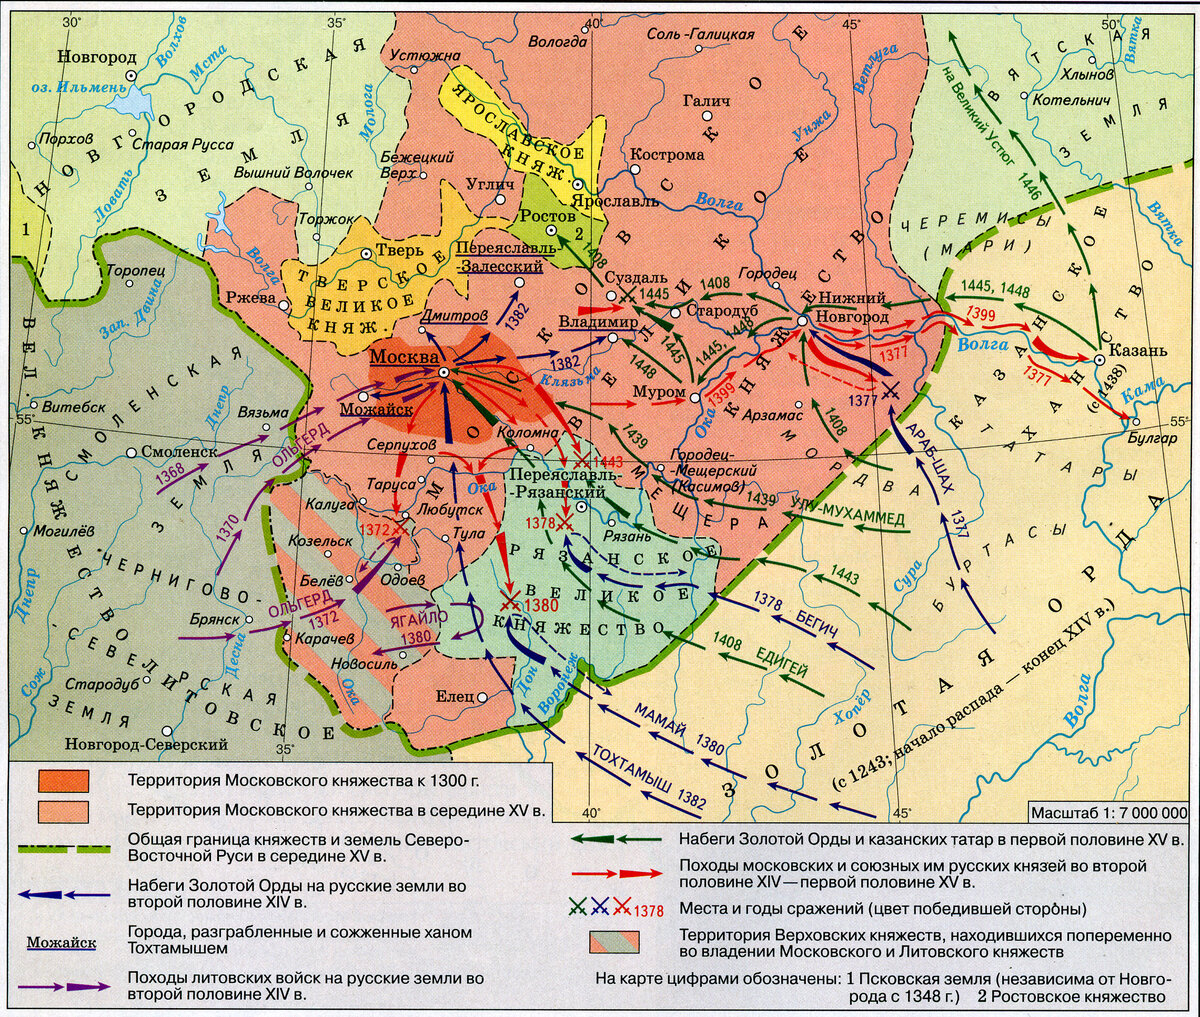 Московское княжество во второй половине 15 века